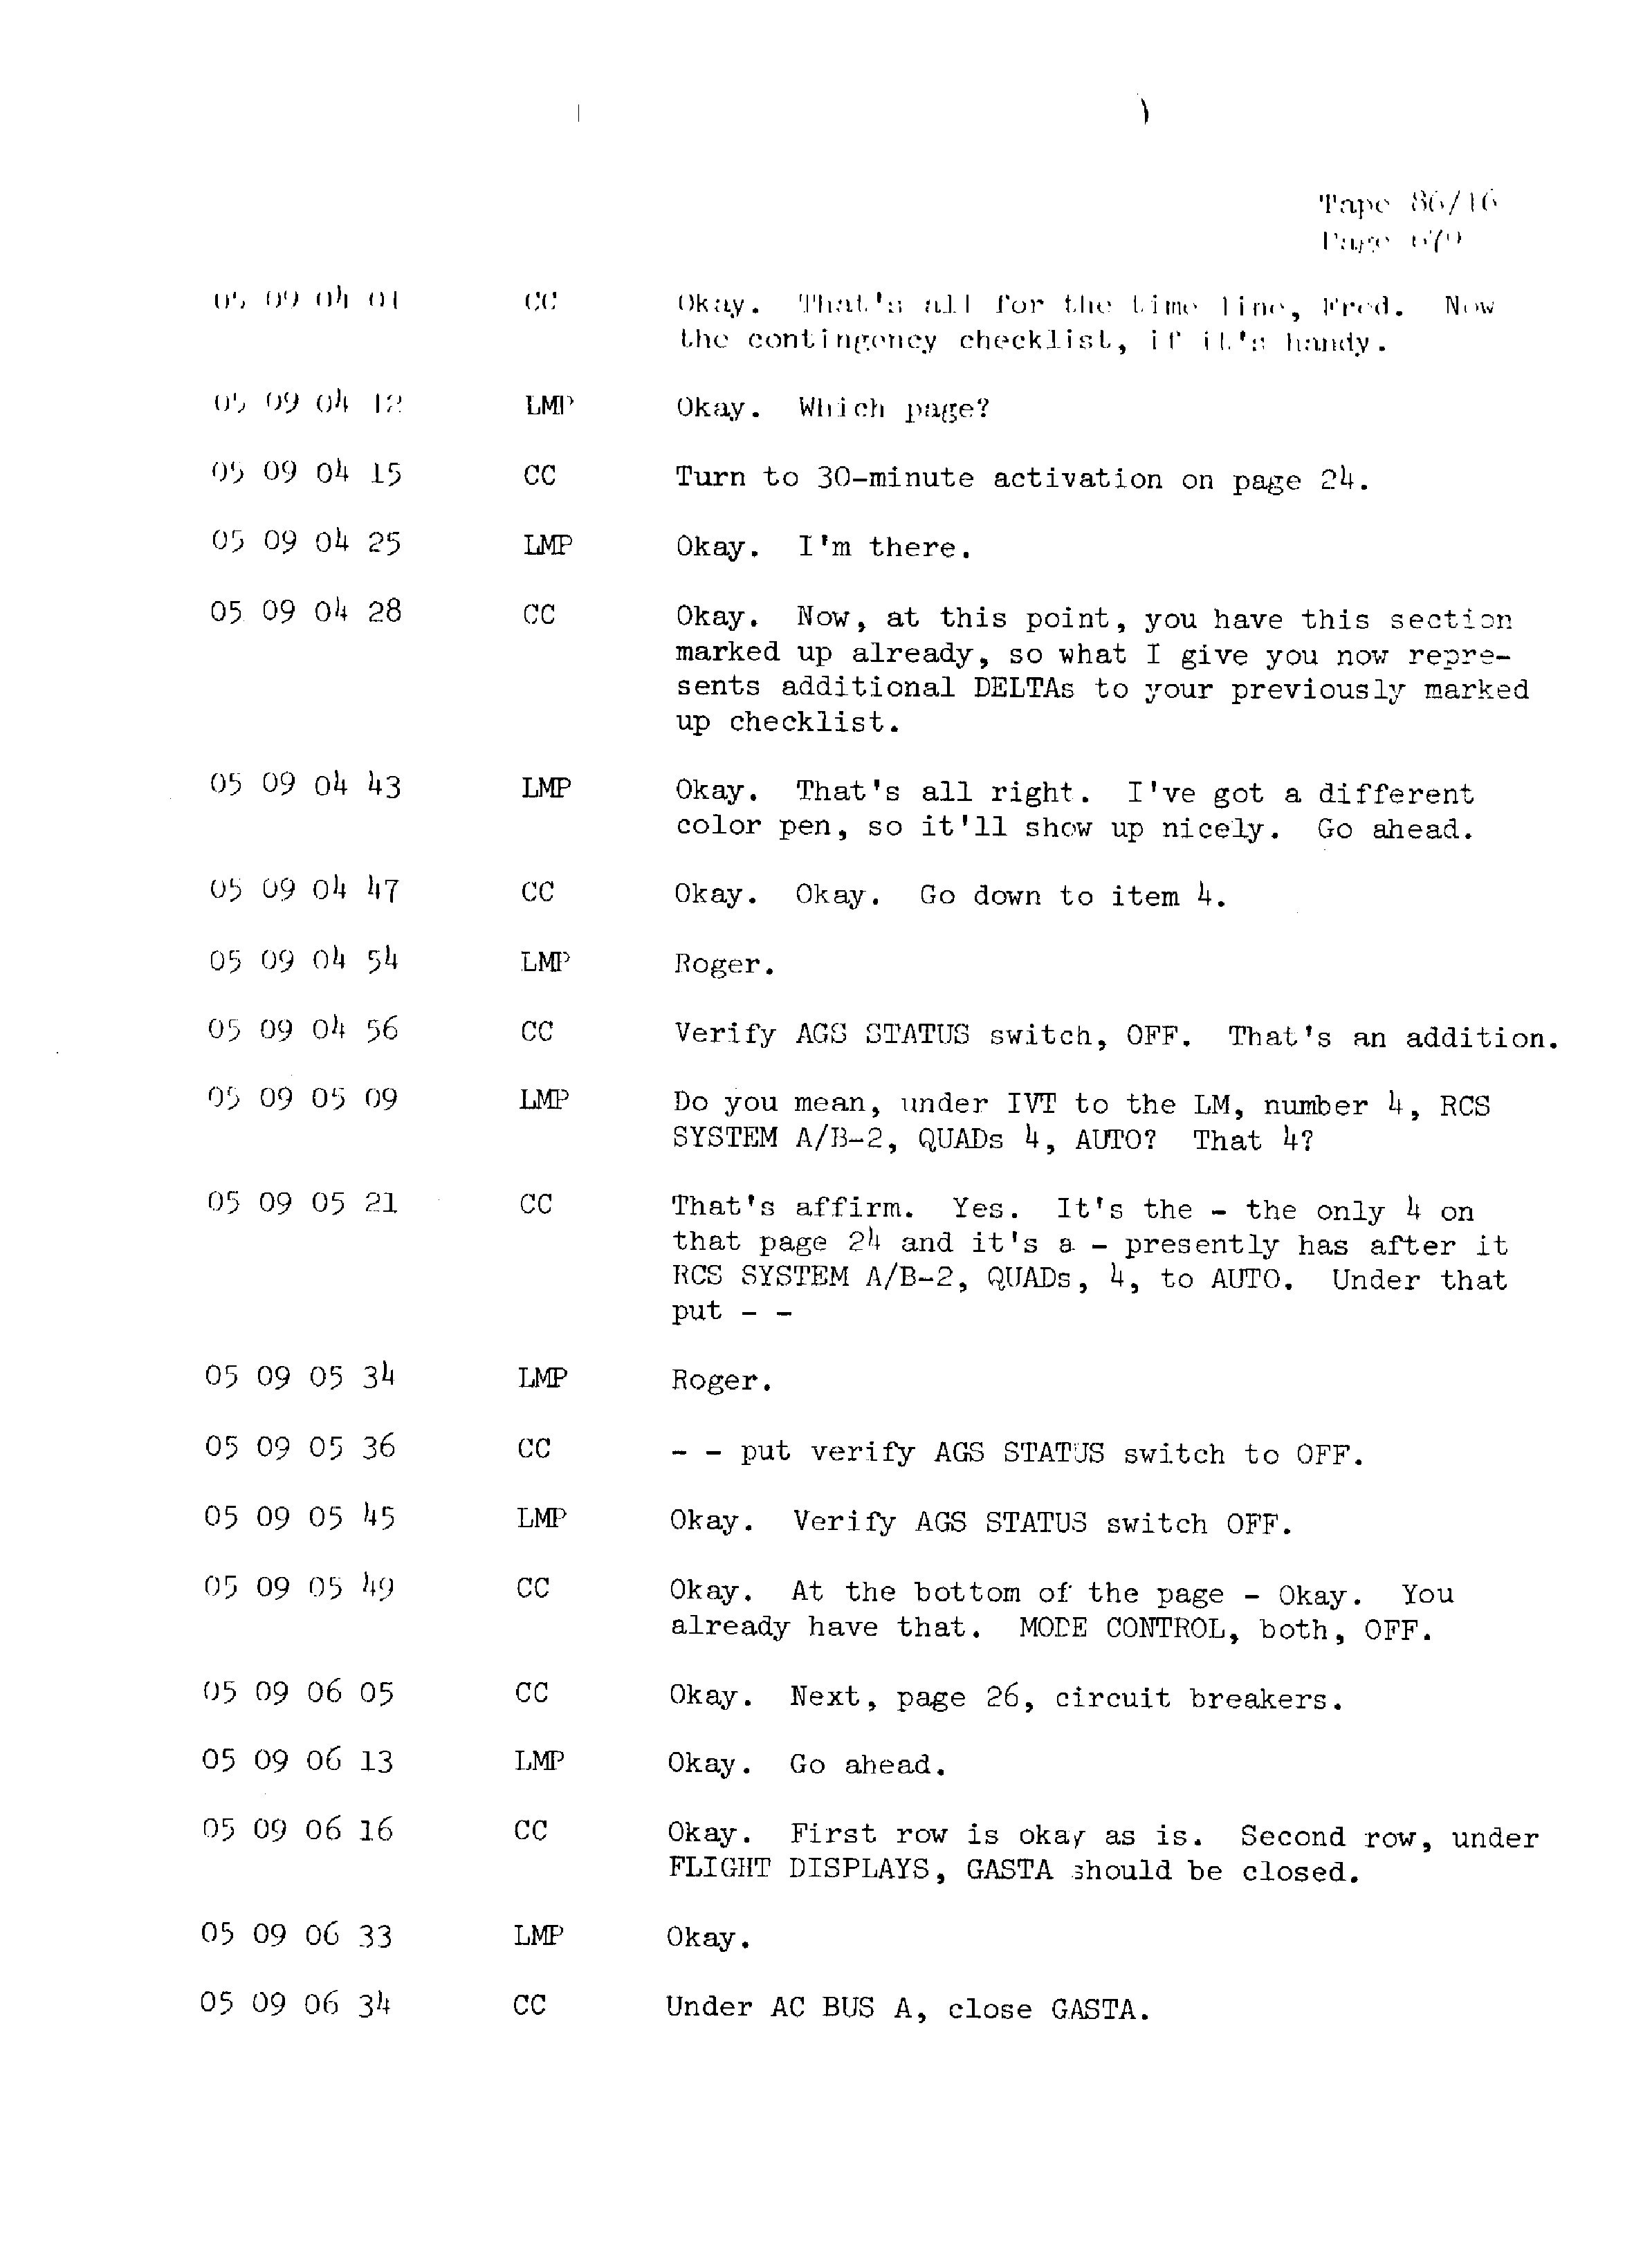 Page 686 of Apollo 13’s original transcript